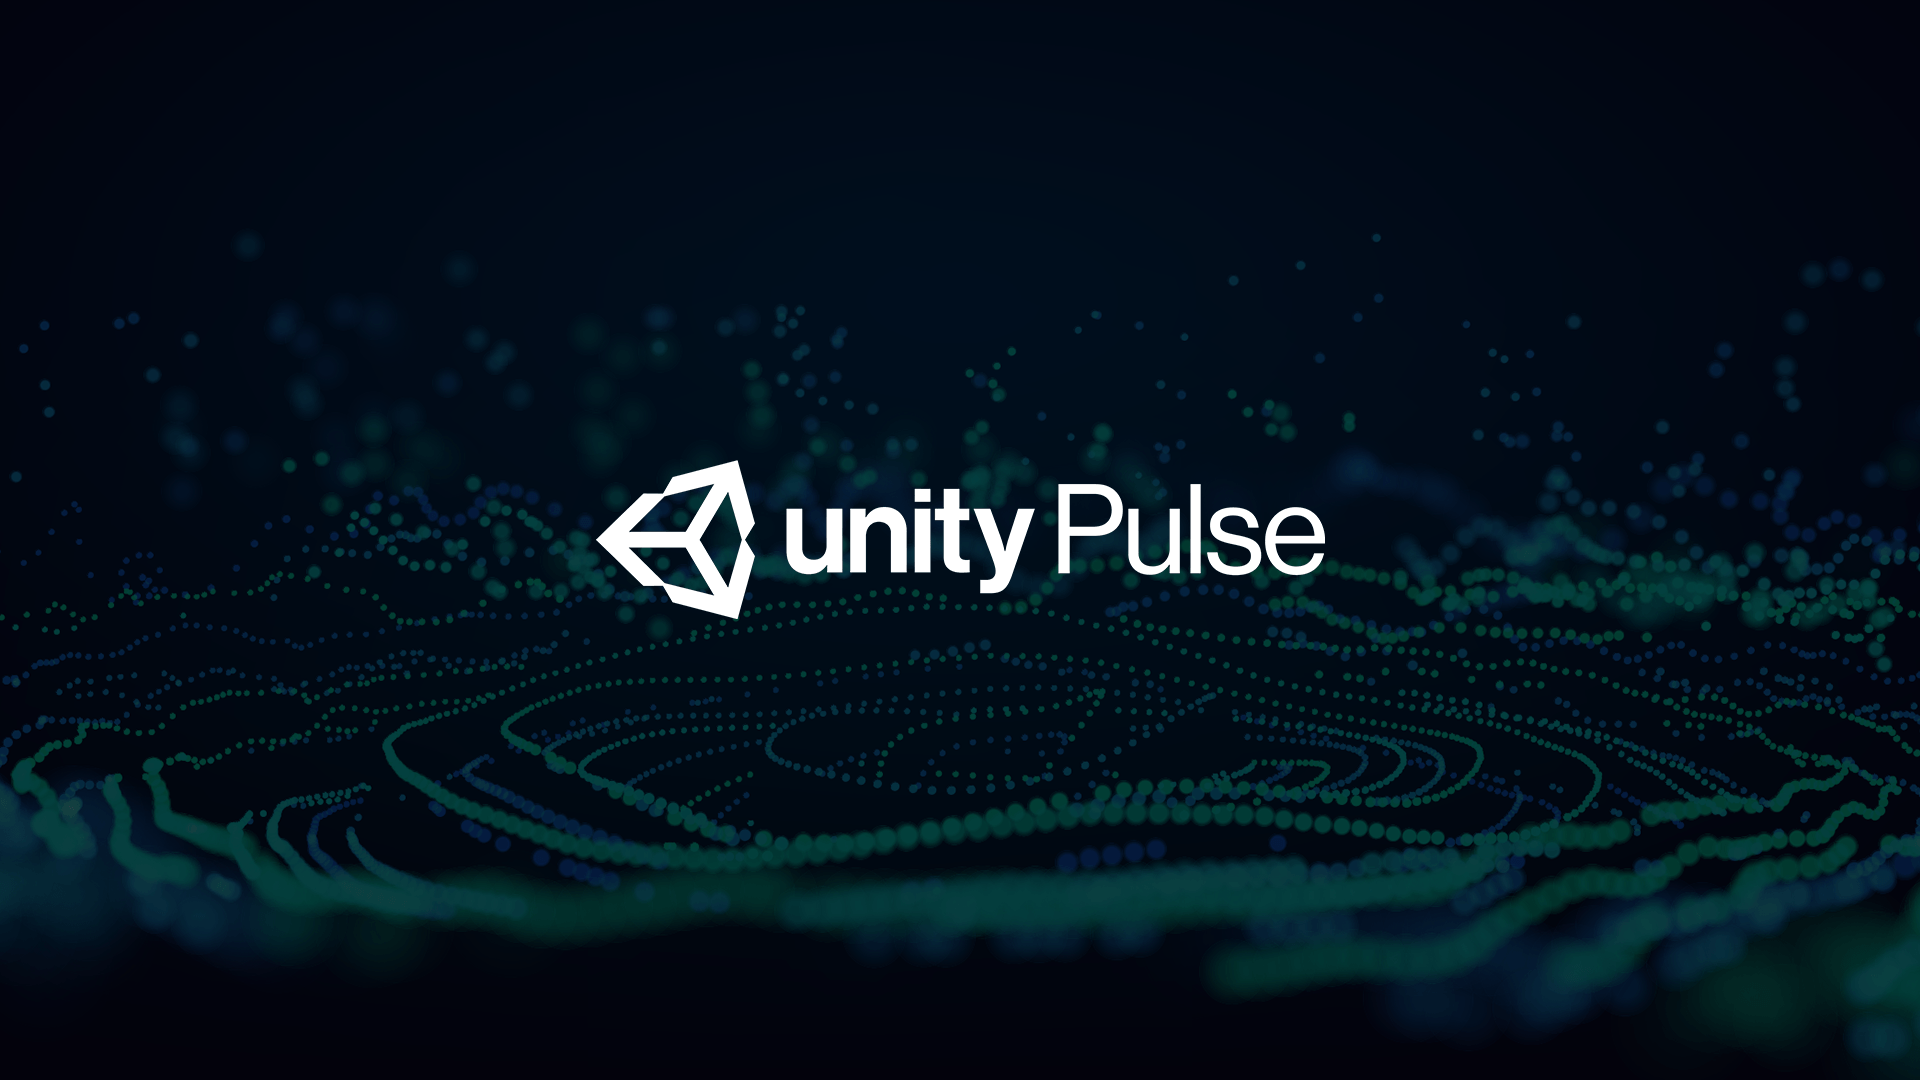 Unity Pulse